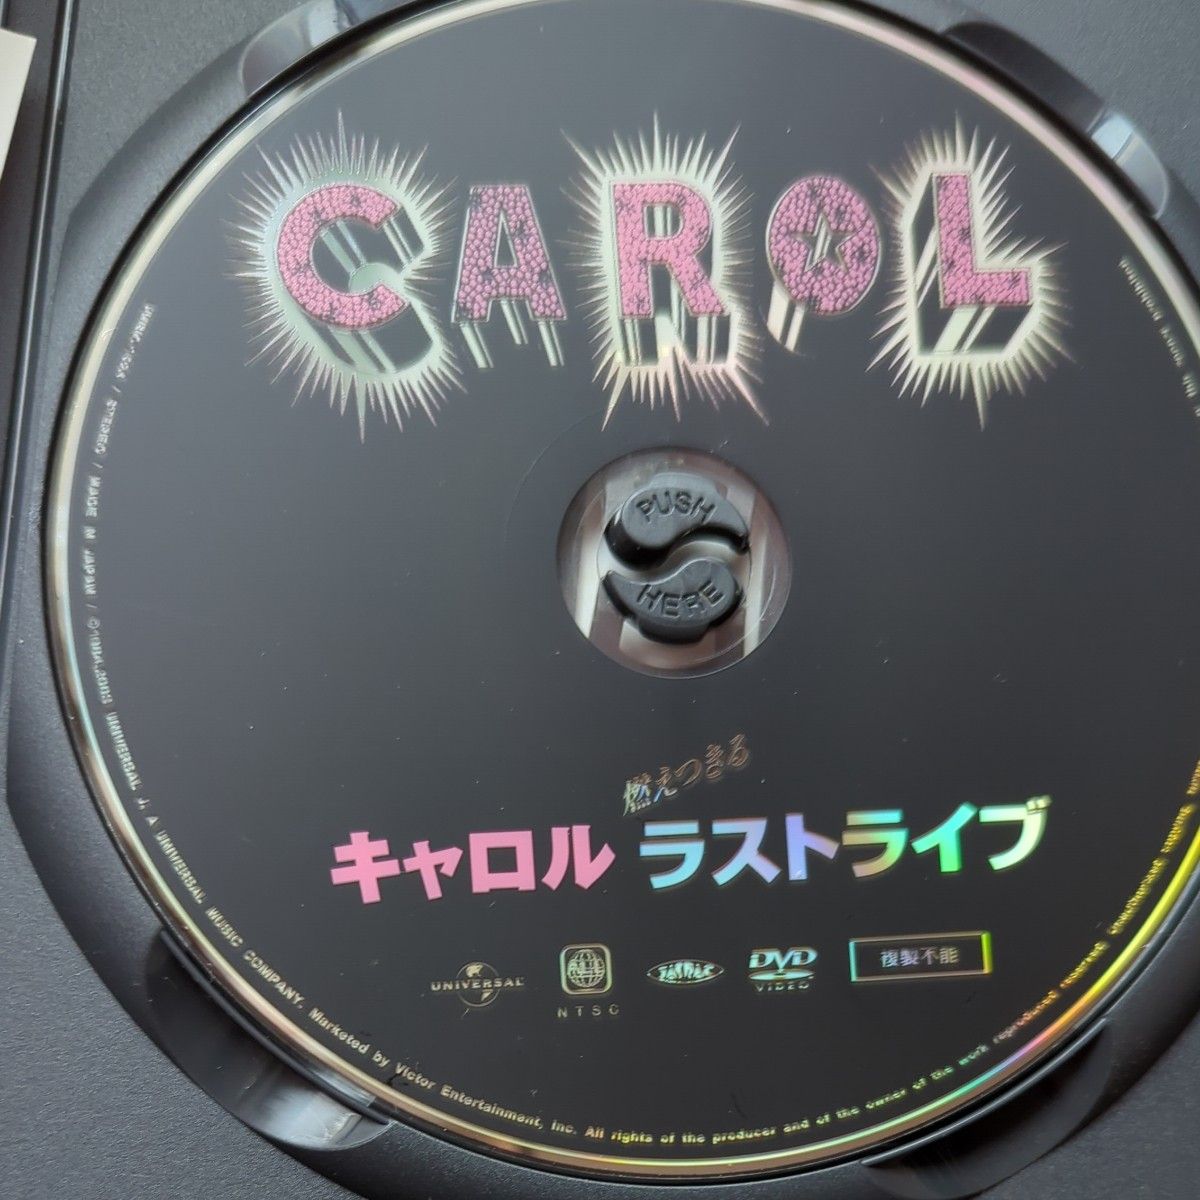 矢沢永吉燃えつきるキャロルラストライブ キャロル DVD